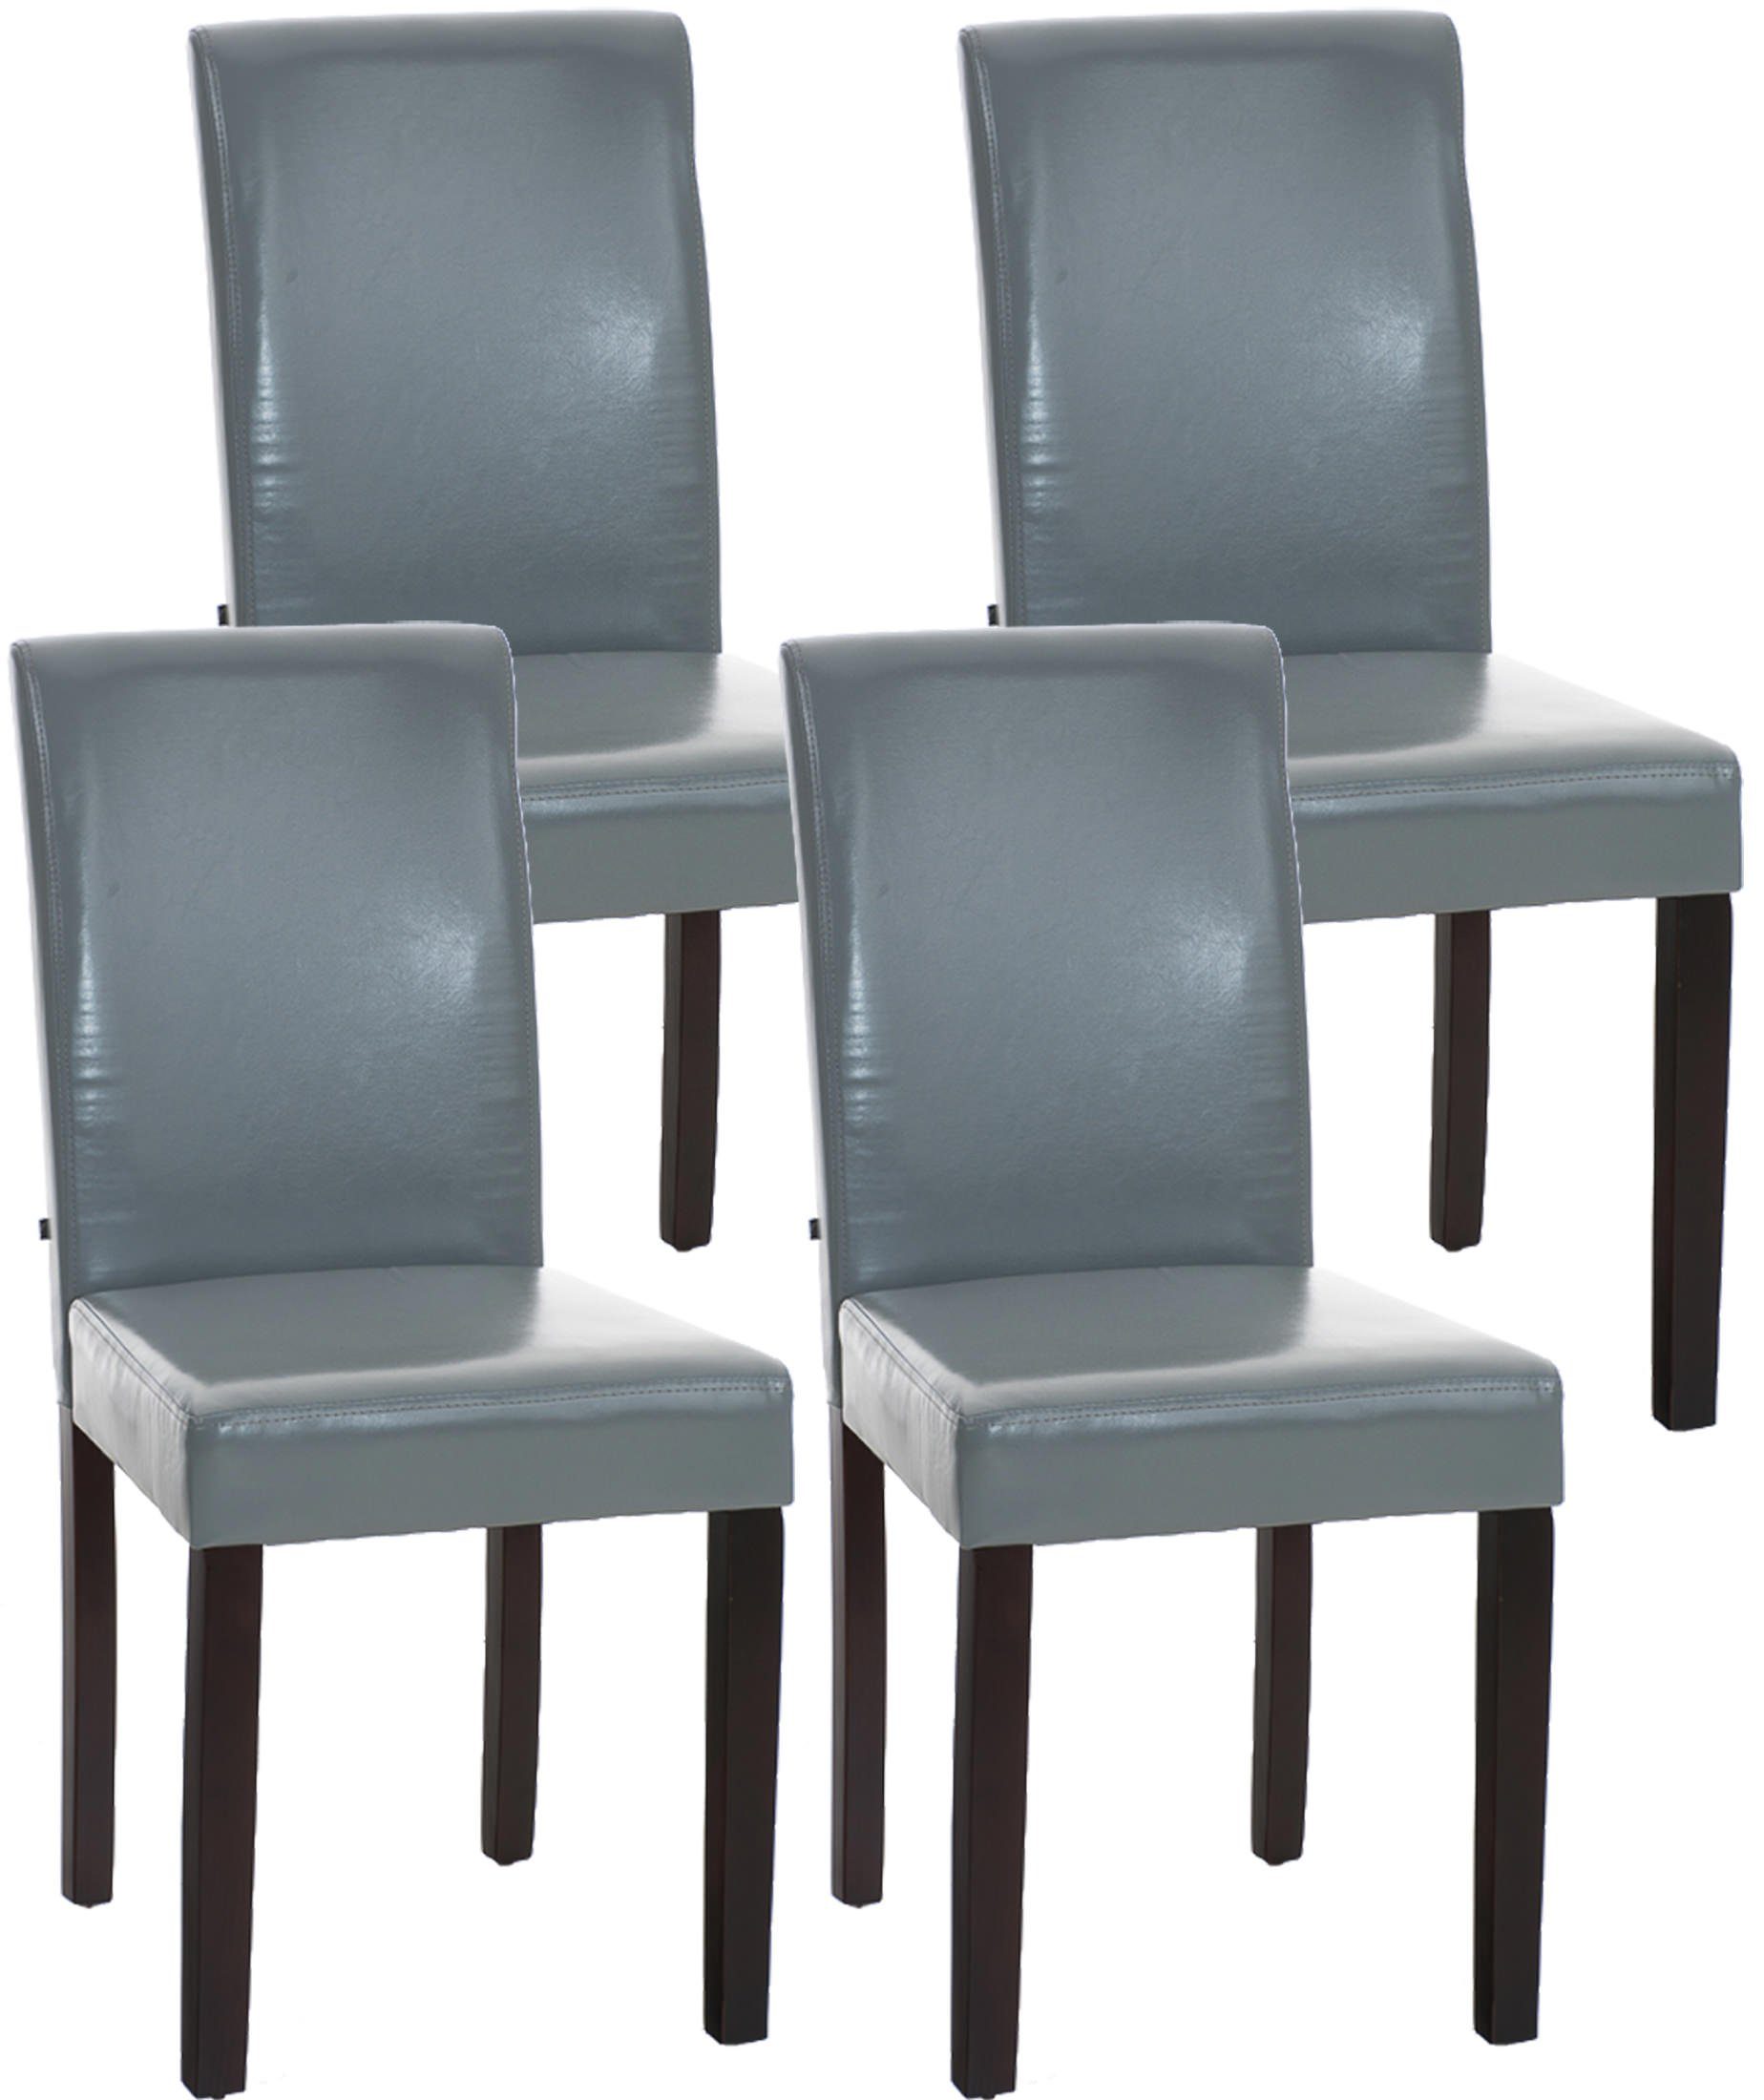 TPFLiving Esszimmerstuhl Ines mit hochwertig gepolsterter Sitzfläche - Konferenzstuhl (Küchenstuhl - Esstischstuhl - Wohnzimmerstuhl, 4 St), Gestell: Holz dunkelbraun - Sitzfläche: Kunstleder grau